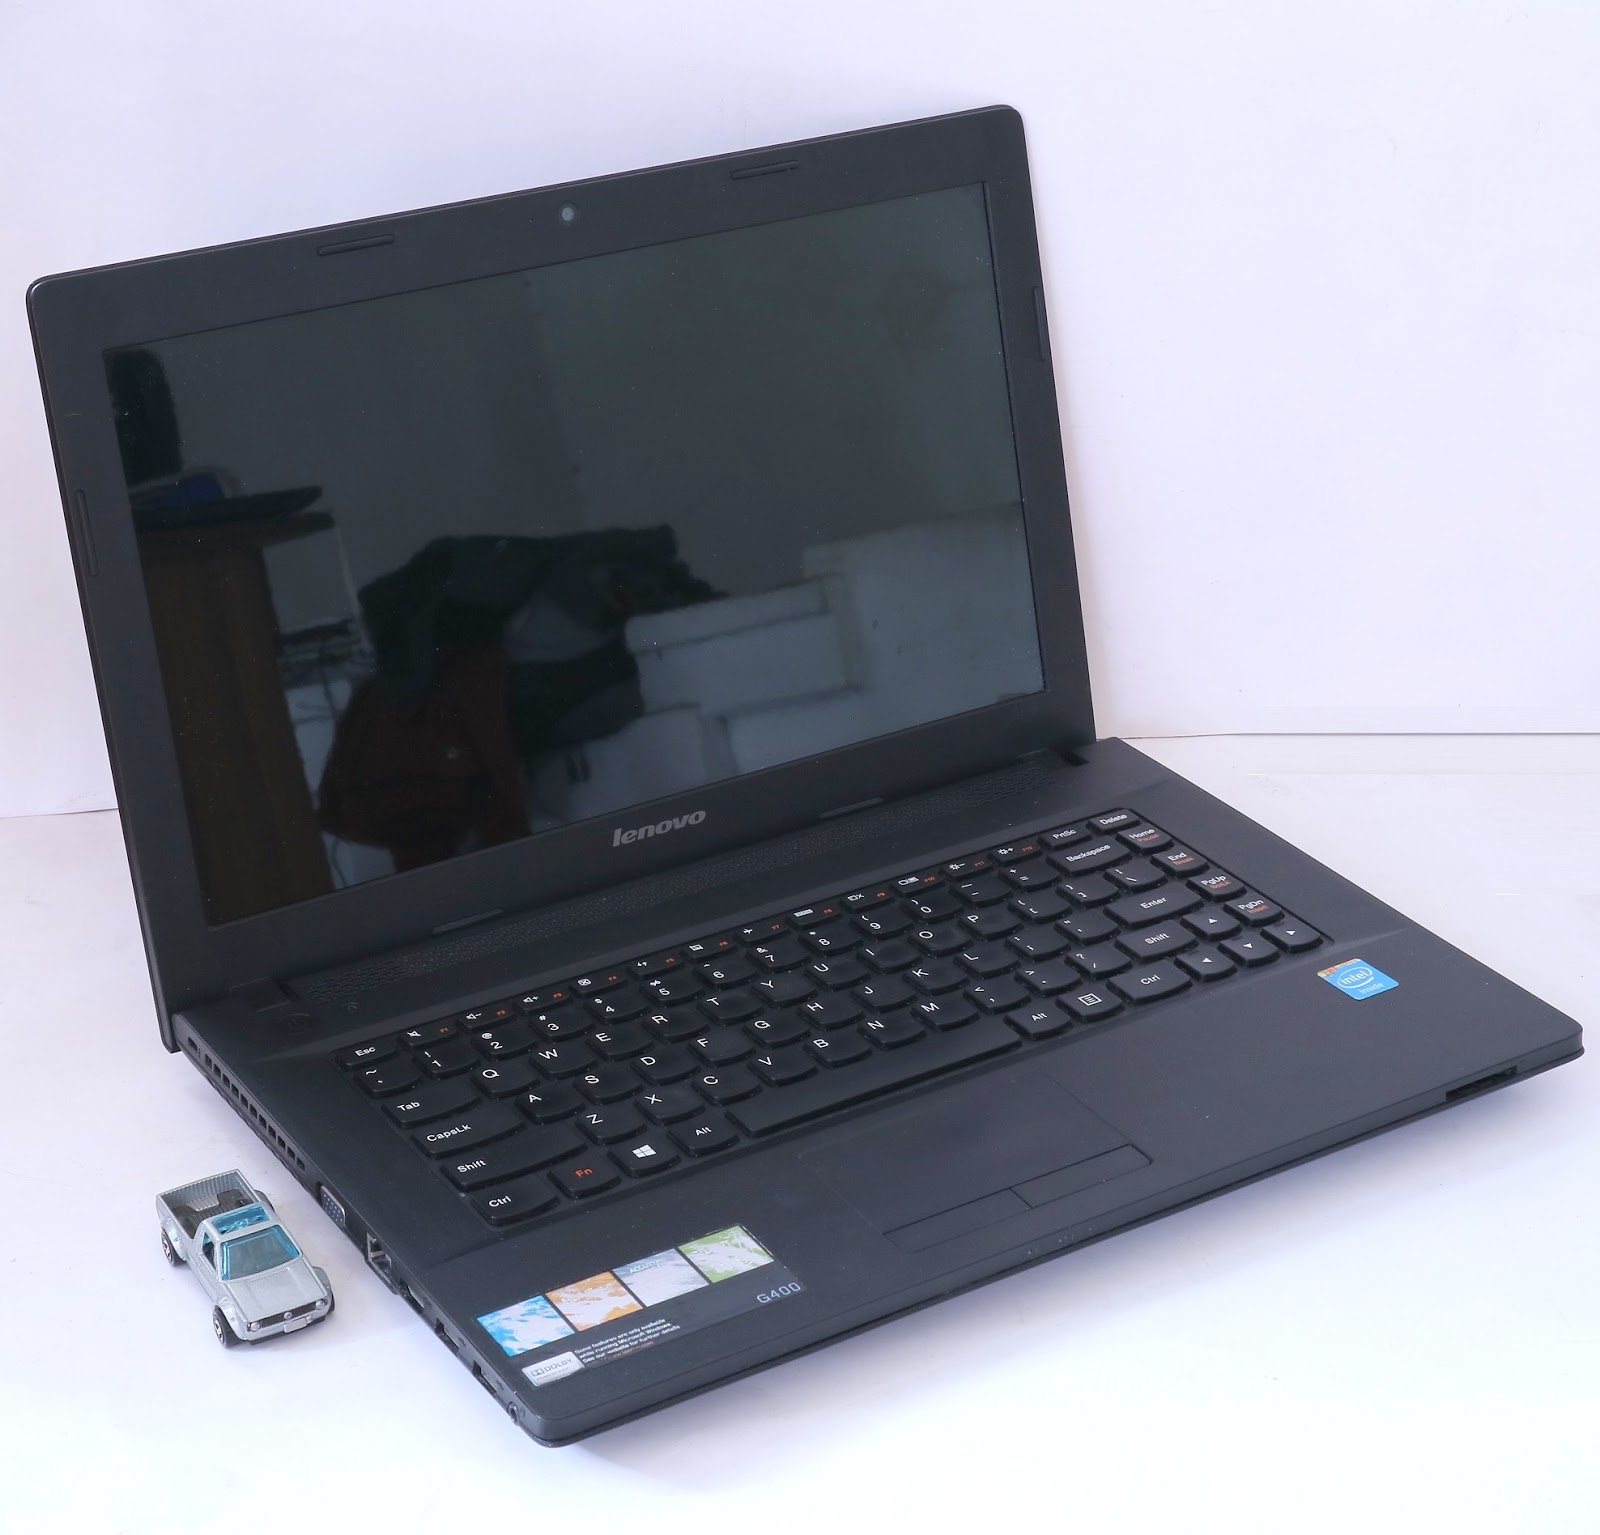 Jual Laptop Lenovo G400 | Intel Celeron 1005PM | Jual Beli Laptop Bekas